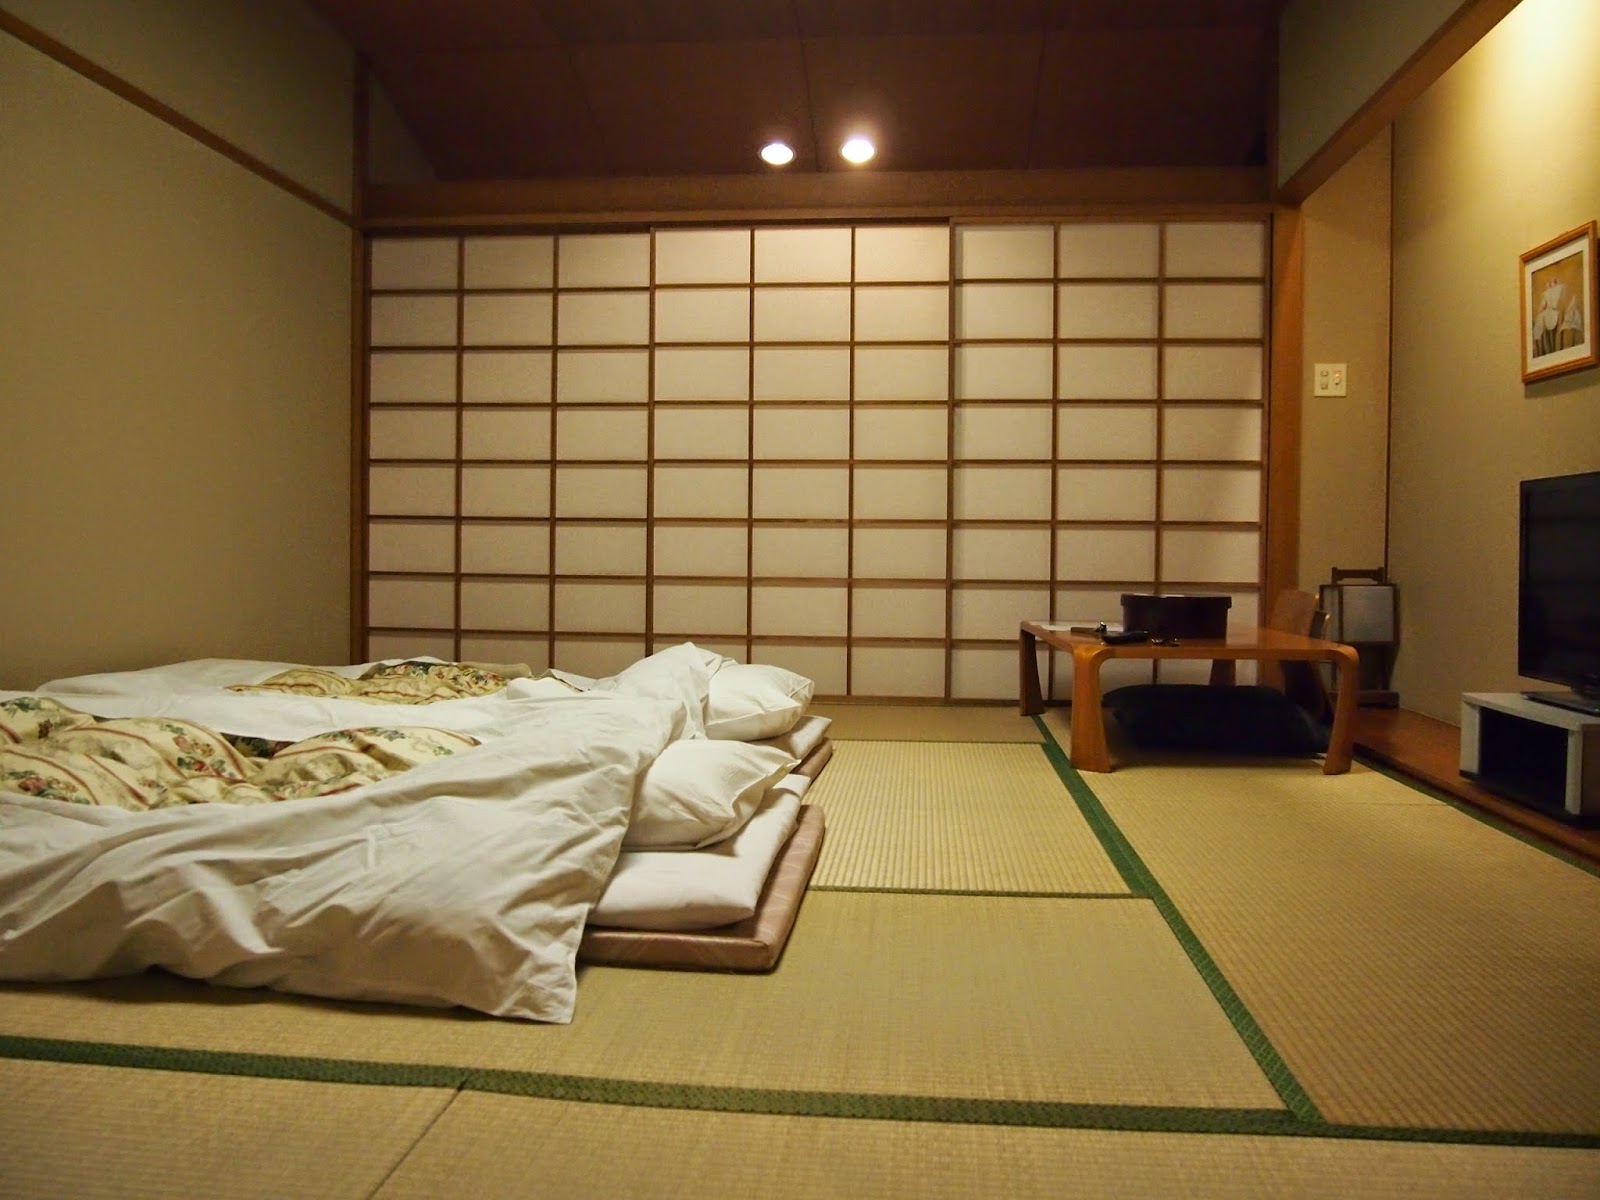 Foto interior do quarto em estilo japonês